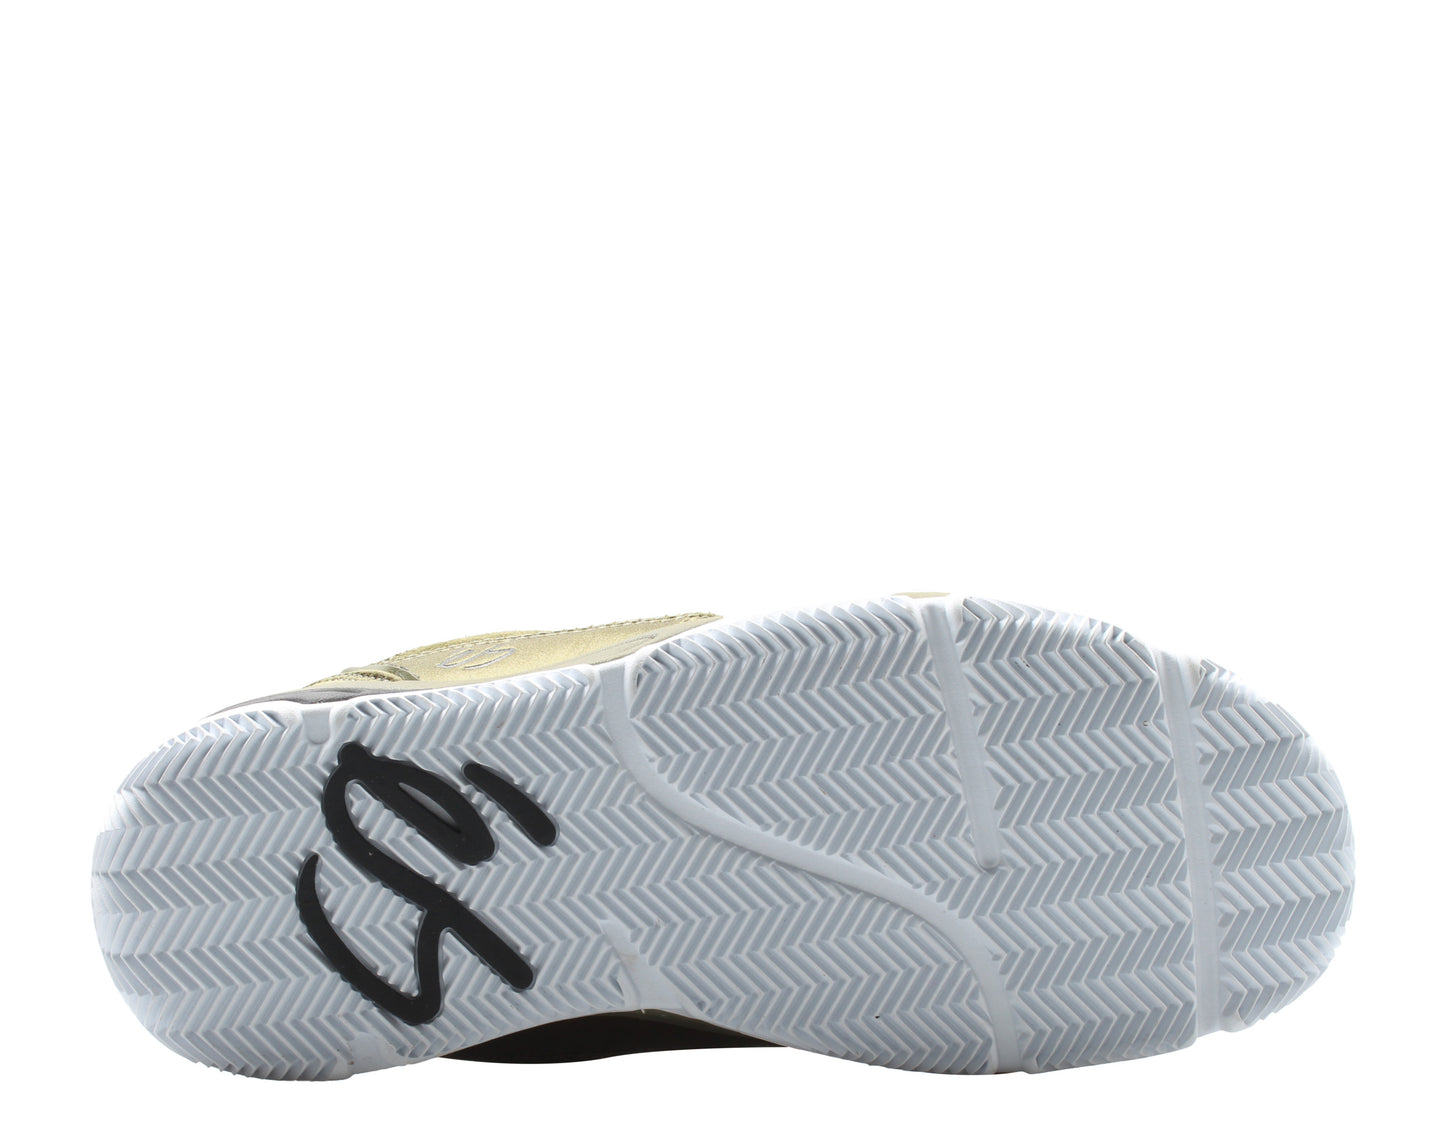 eS Footwear Silo Olive/White Men's Skateboard Sneakers 5101000167301